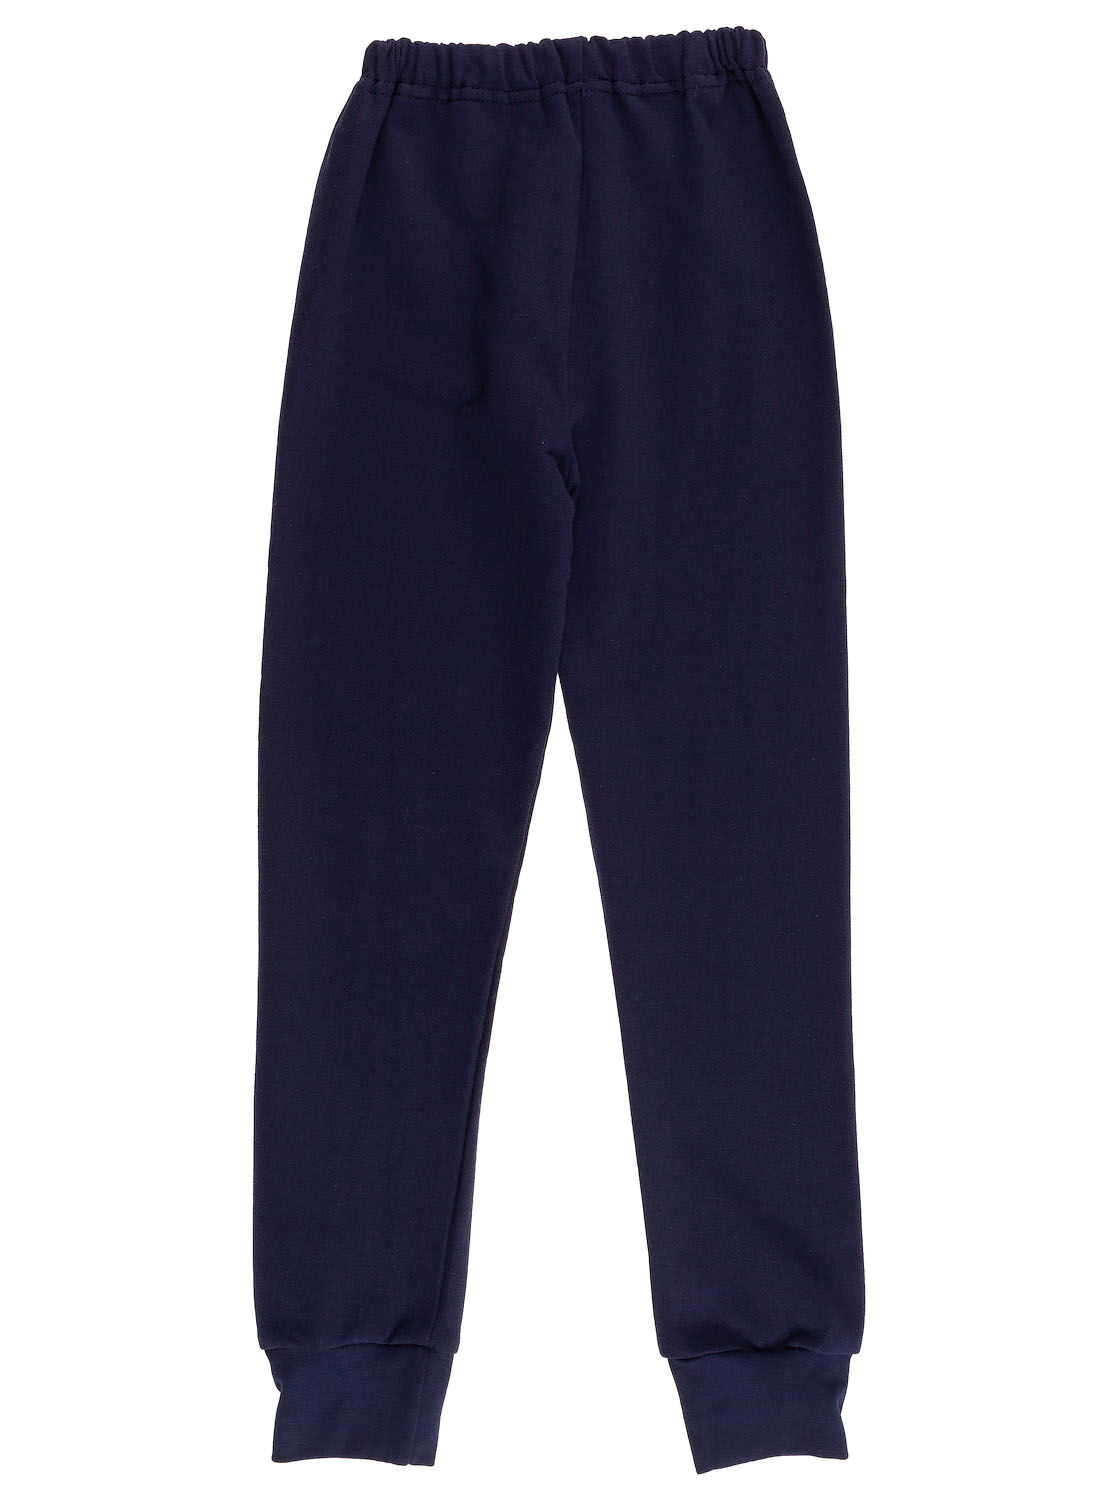 Спортивные штаны для мальчика Фламинго темно-синие 718-312 - фото